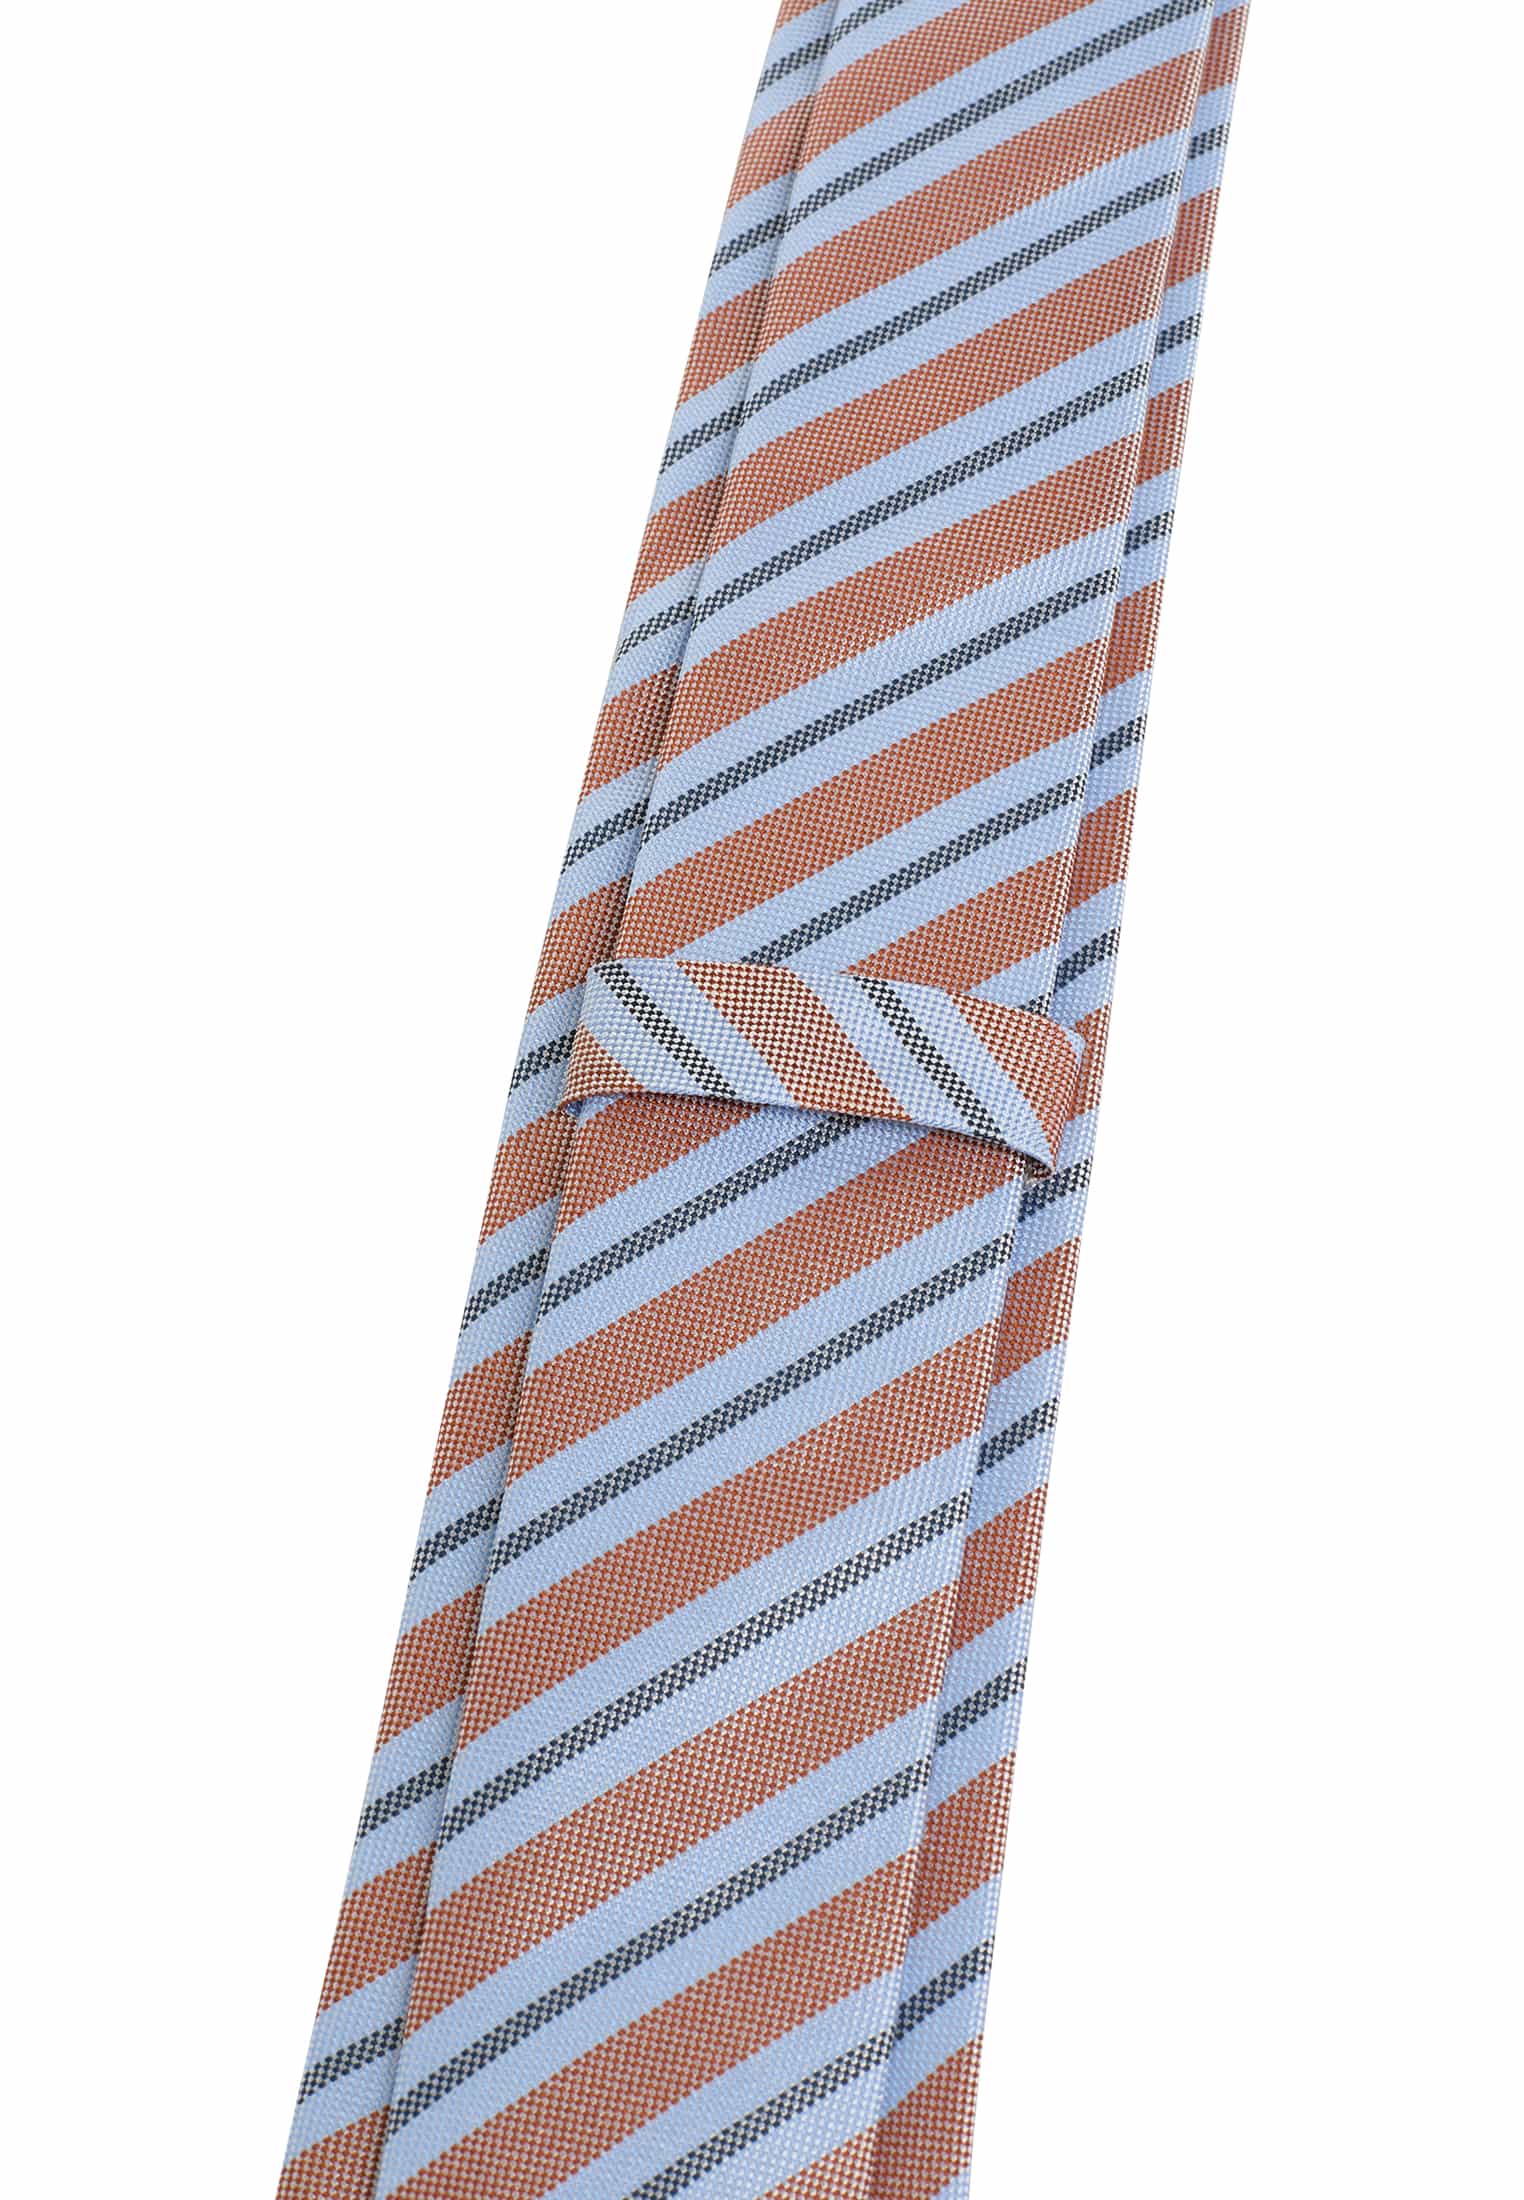 142 | Krawatte in hellblau/orange | 1AC02000-81-33-142 hellblau/orange gestreift |